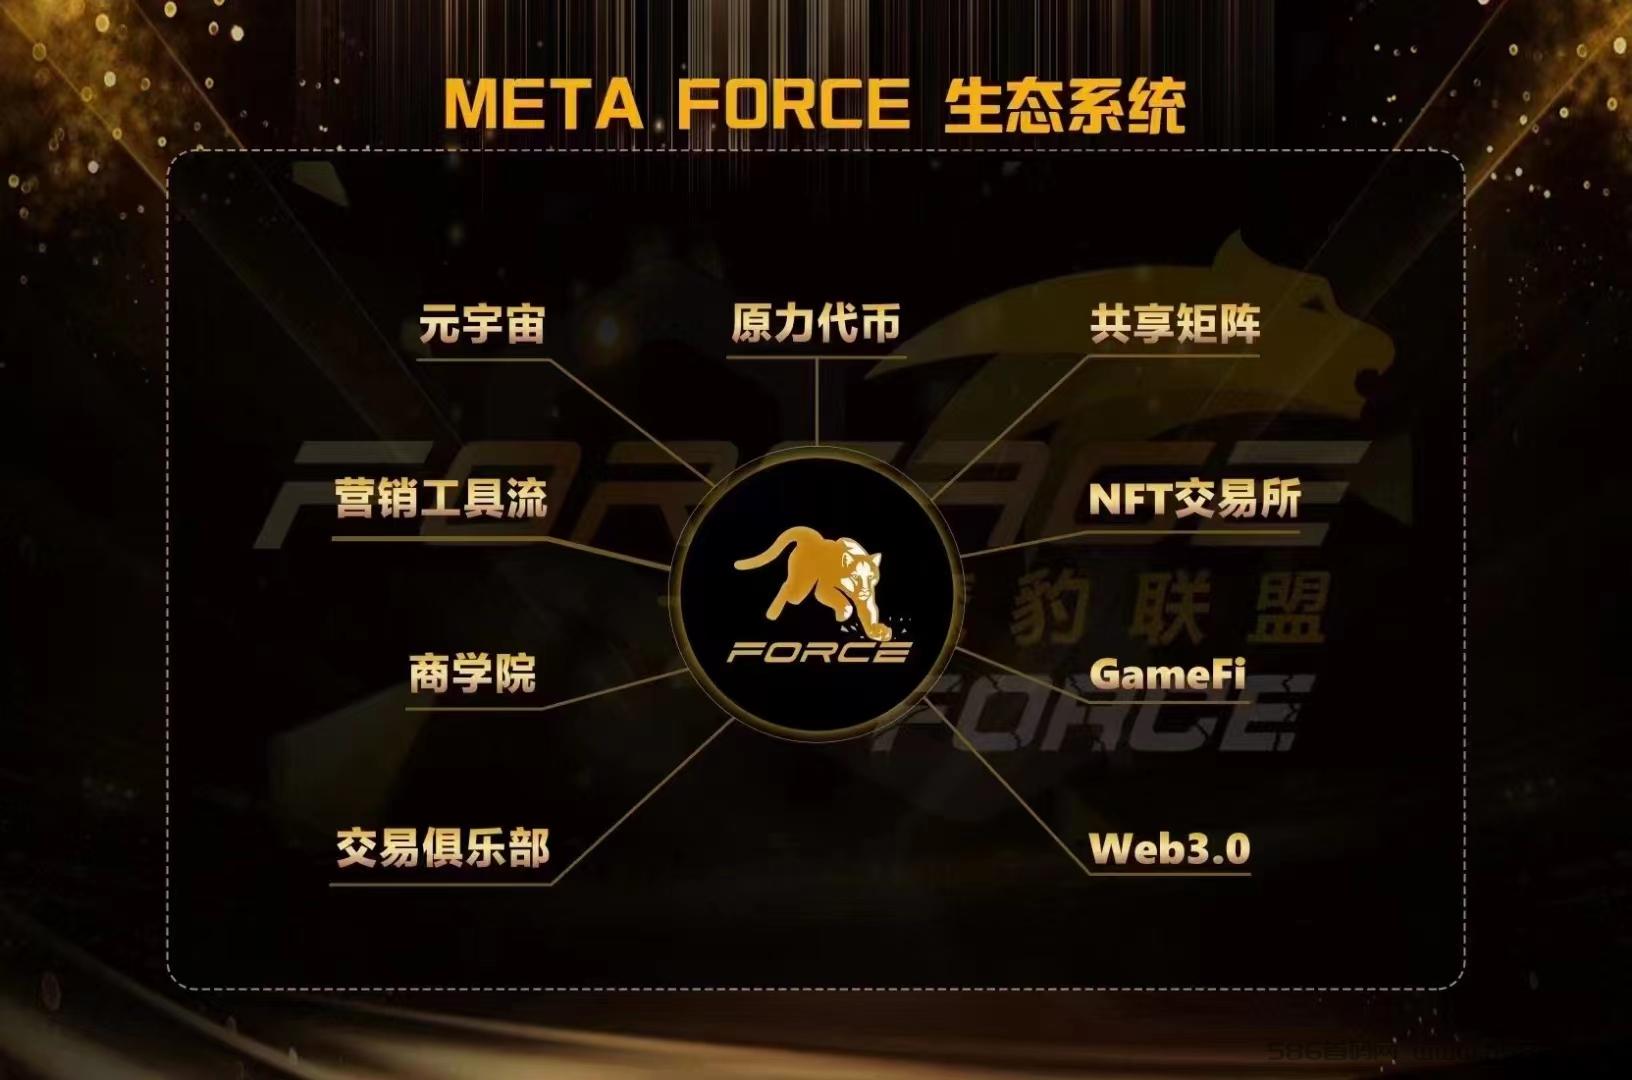 MetaForce 佛萨奇2.0 招募玩家V 100012123